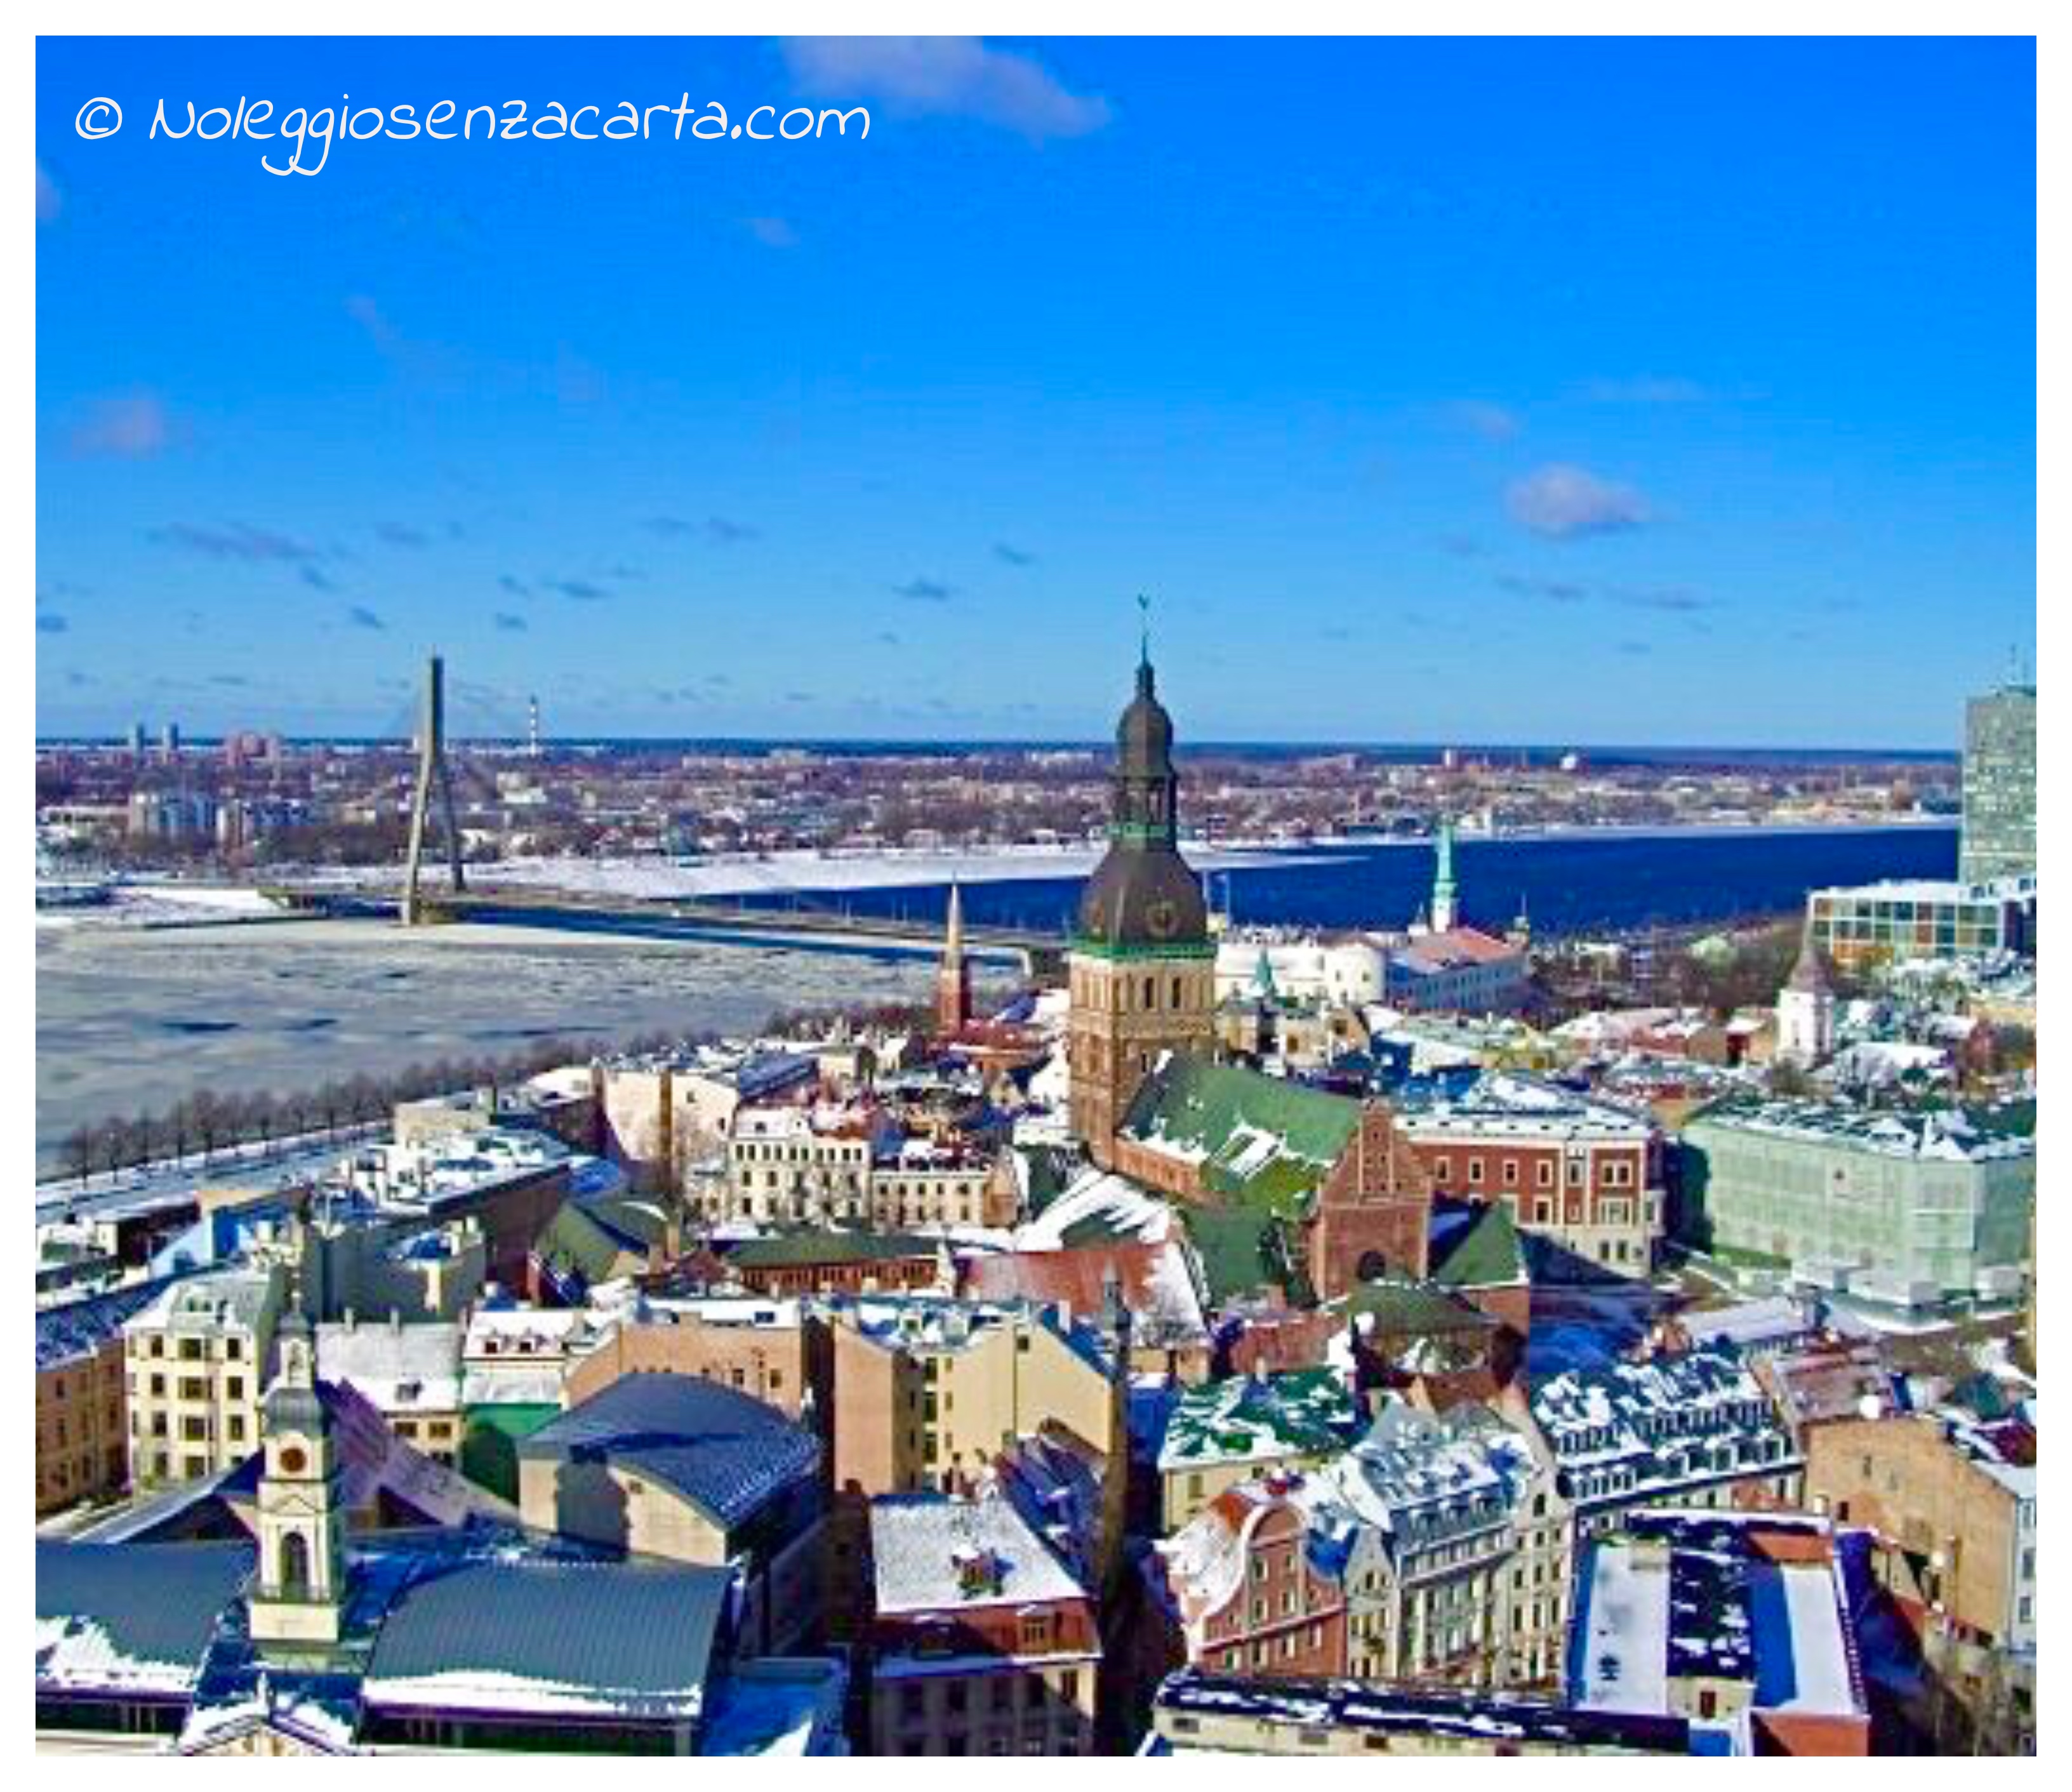 Noleggiare auto senza carta di credito a Riga – Lettonia